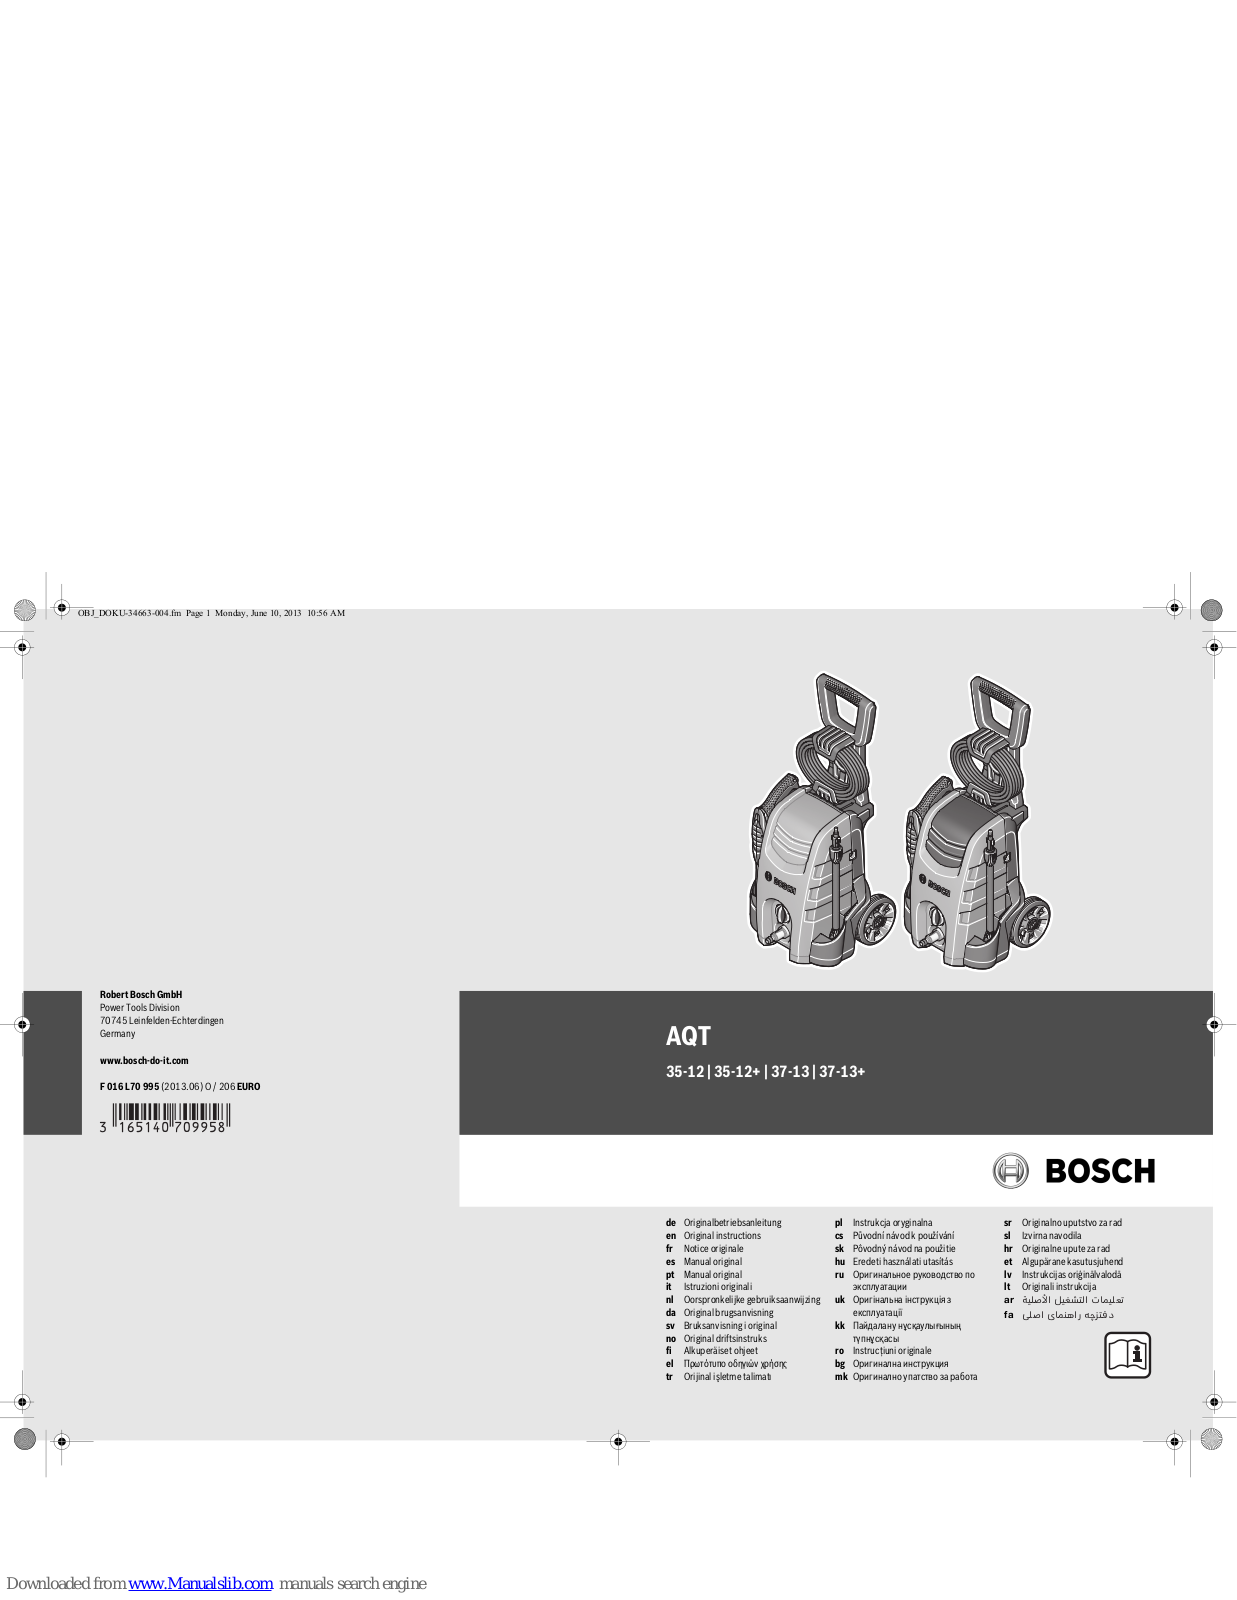 Bosch AQT 35-12 Original Instructions Manual